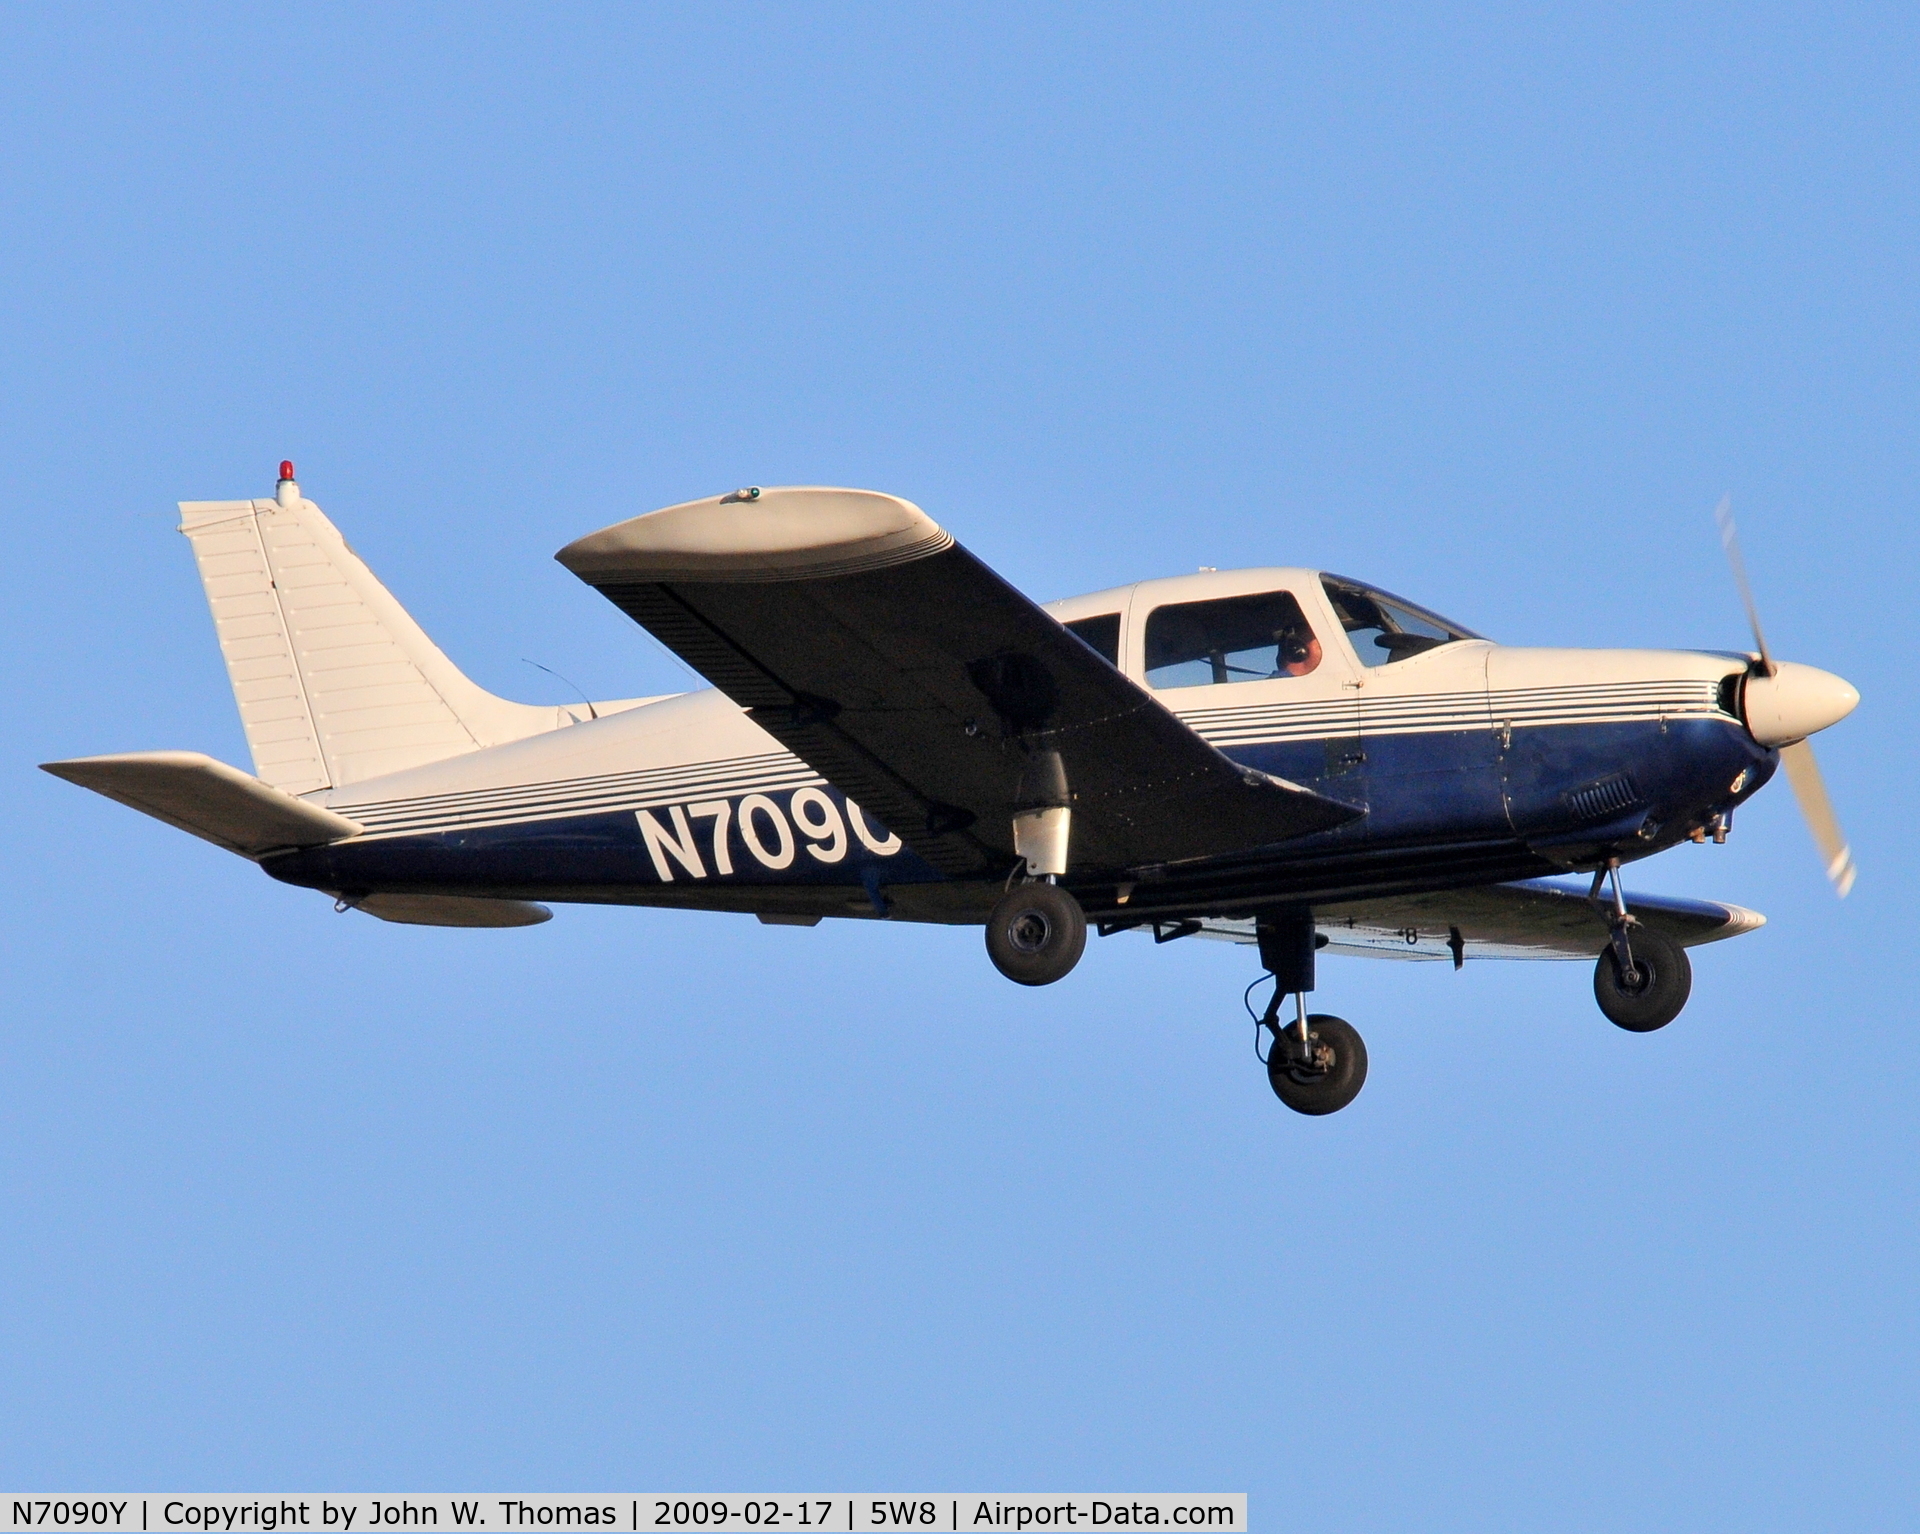 N7090Y, 1973 Piper PA-28-180 C/N 28-7305058, Departing runway 22